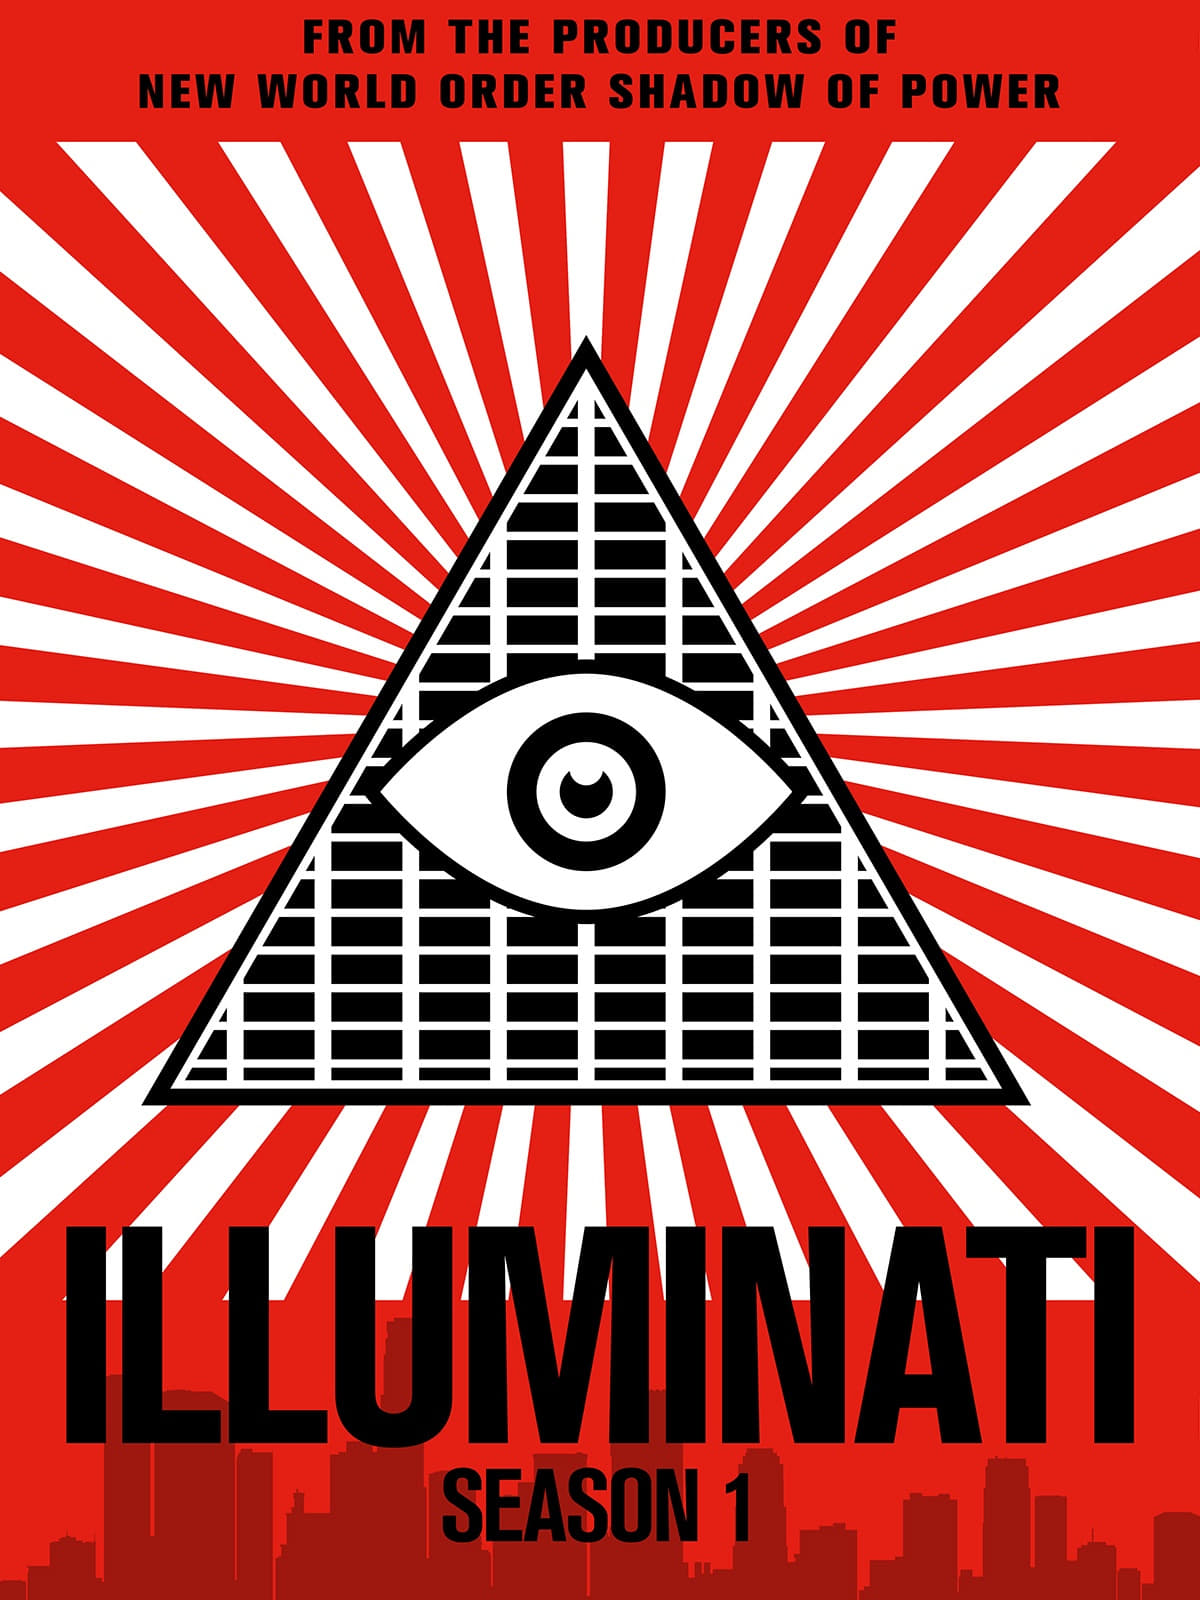 Illuminati Season 1